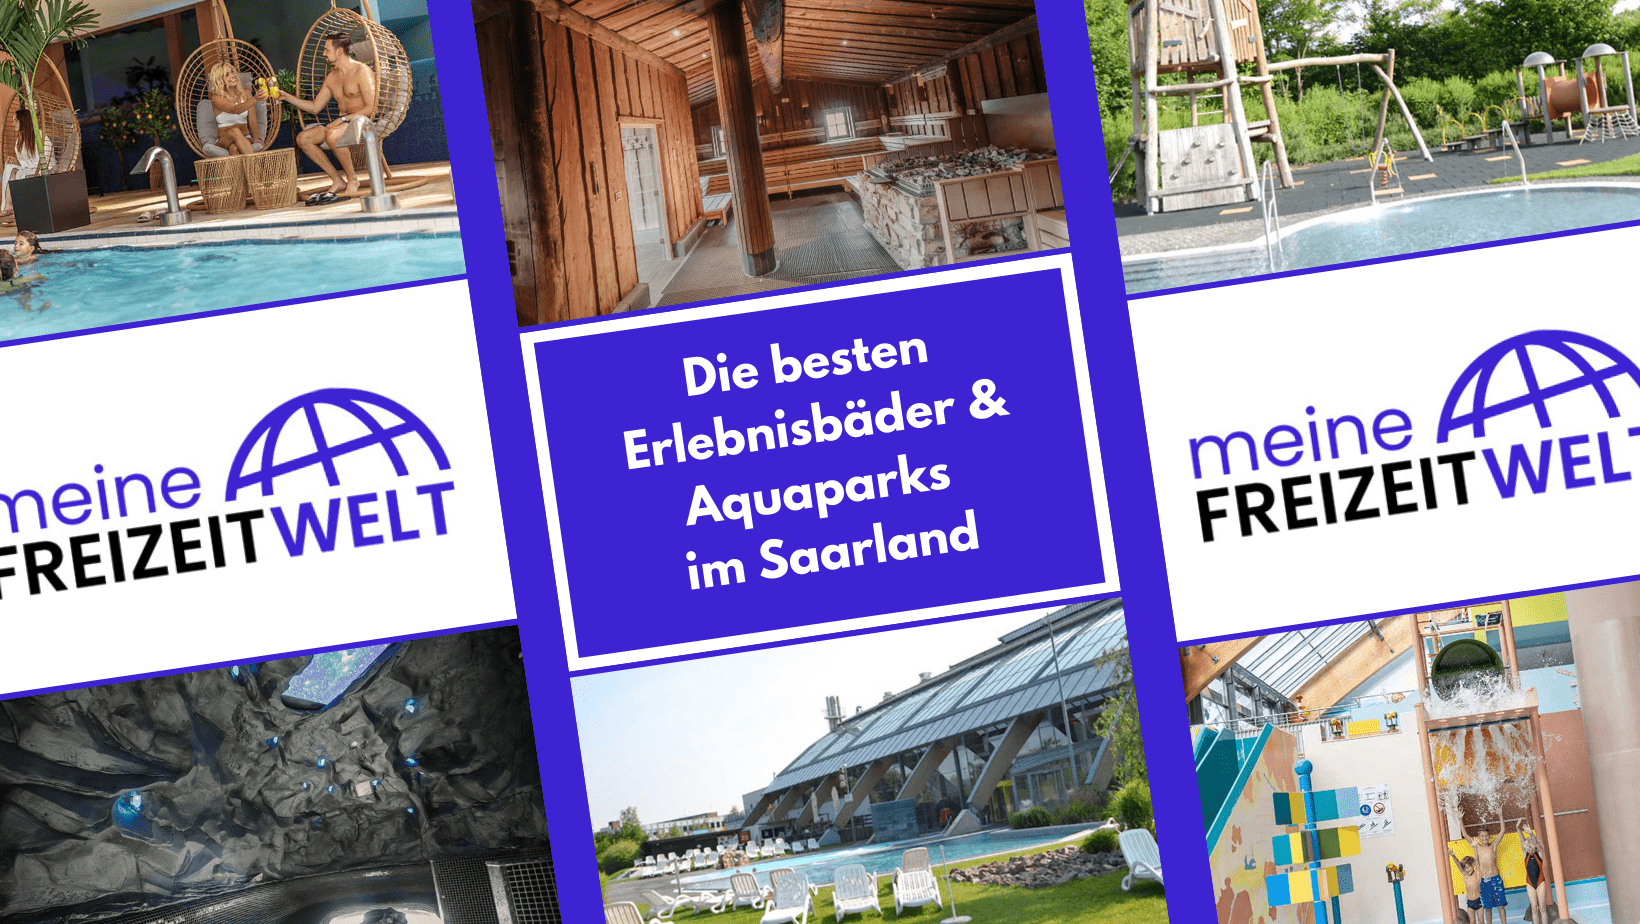 Die besten Erlebnisbäder & Aquaparks - Saarland